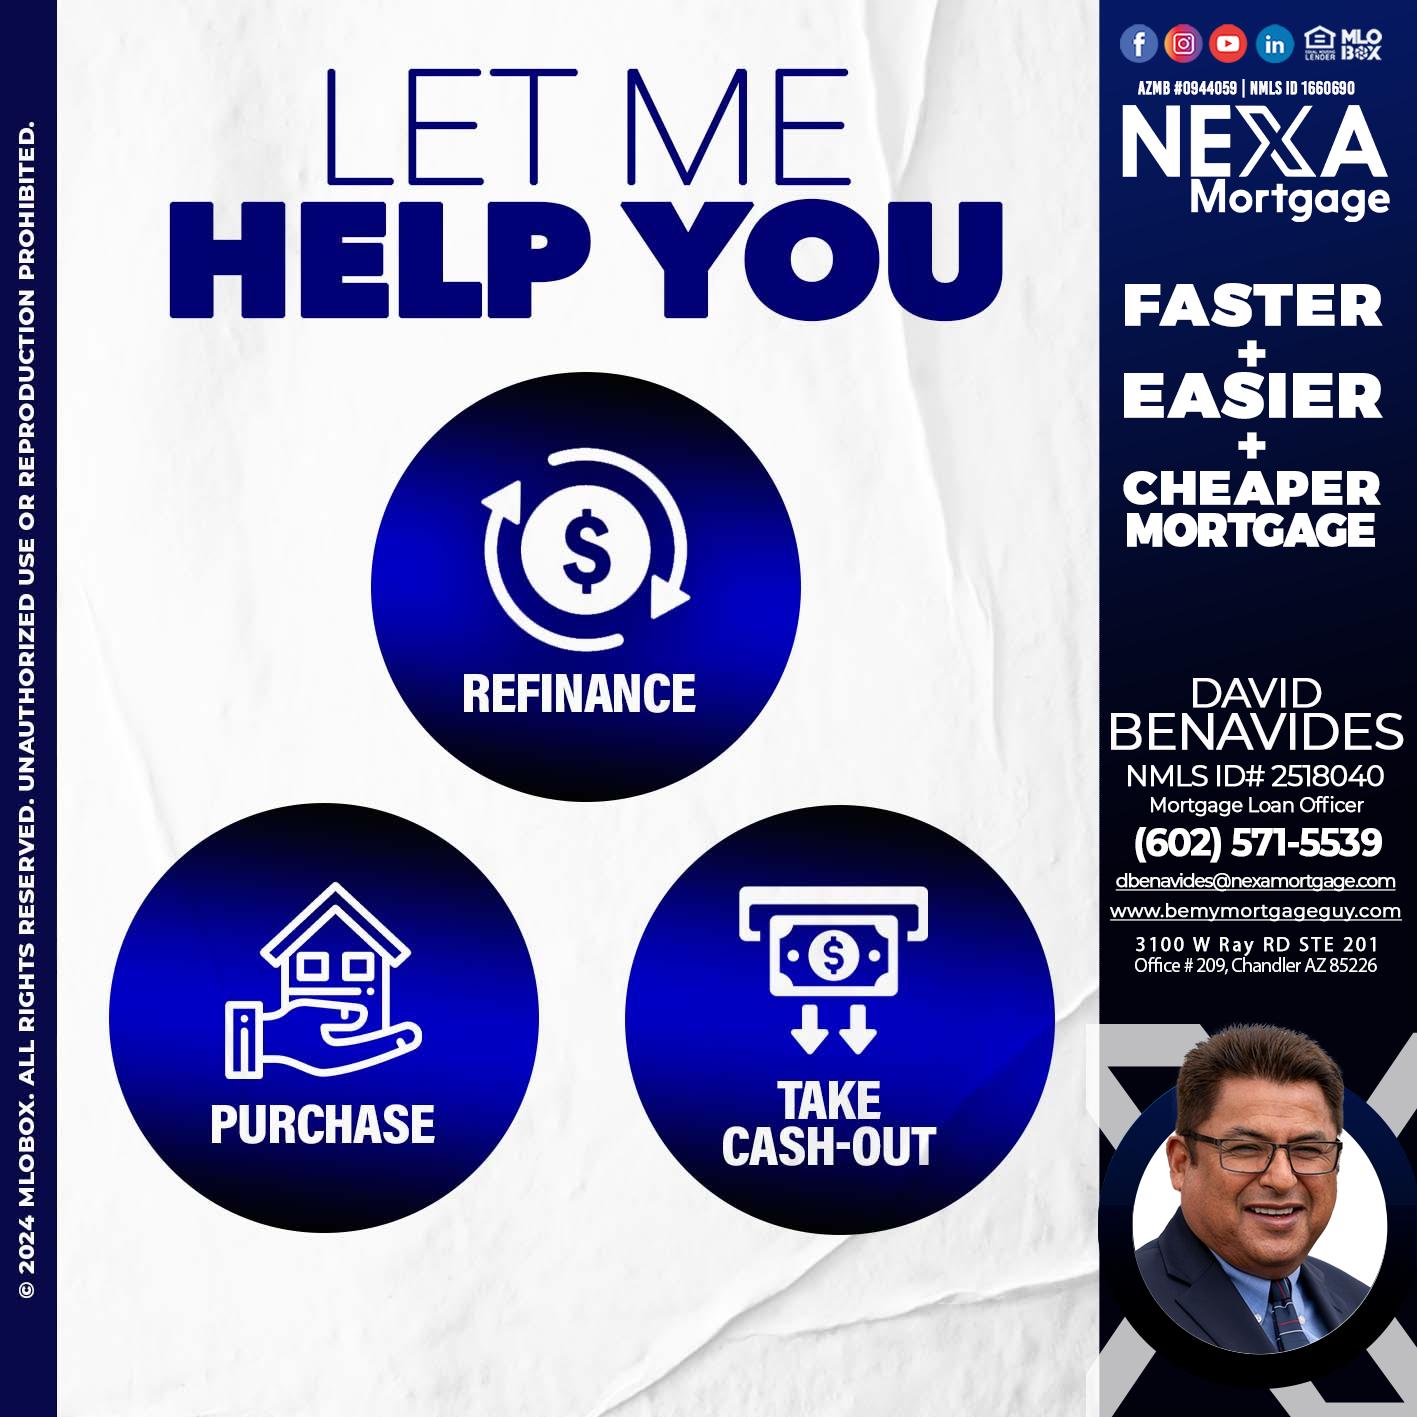 LET ME HELP YOU - David Benavides -Mortgage Loan Officer